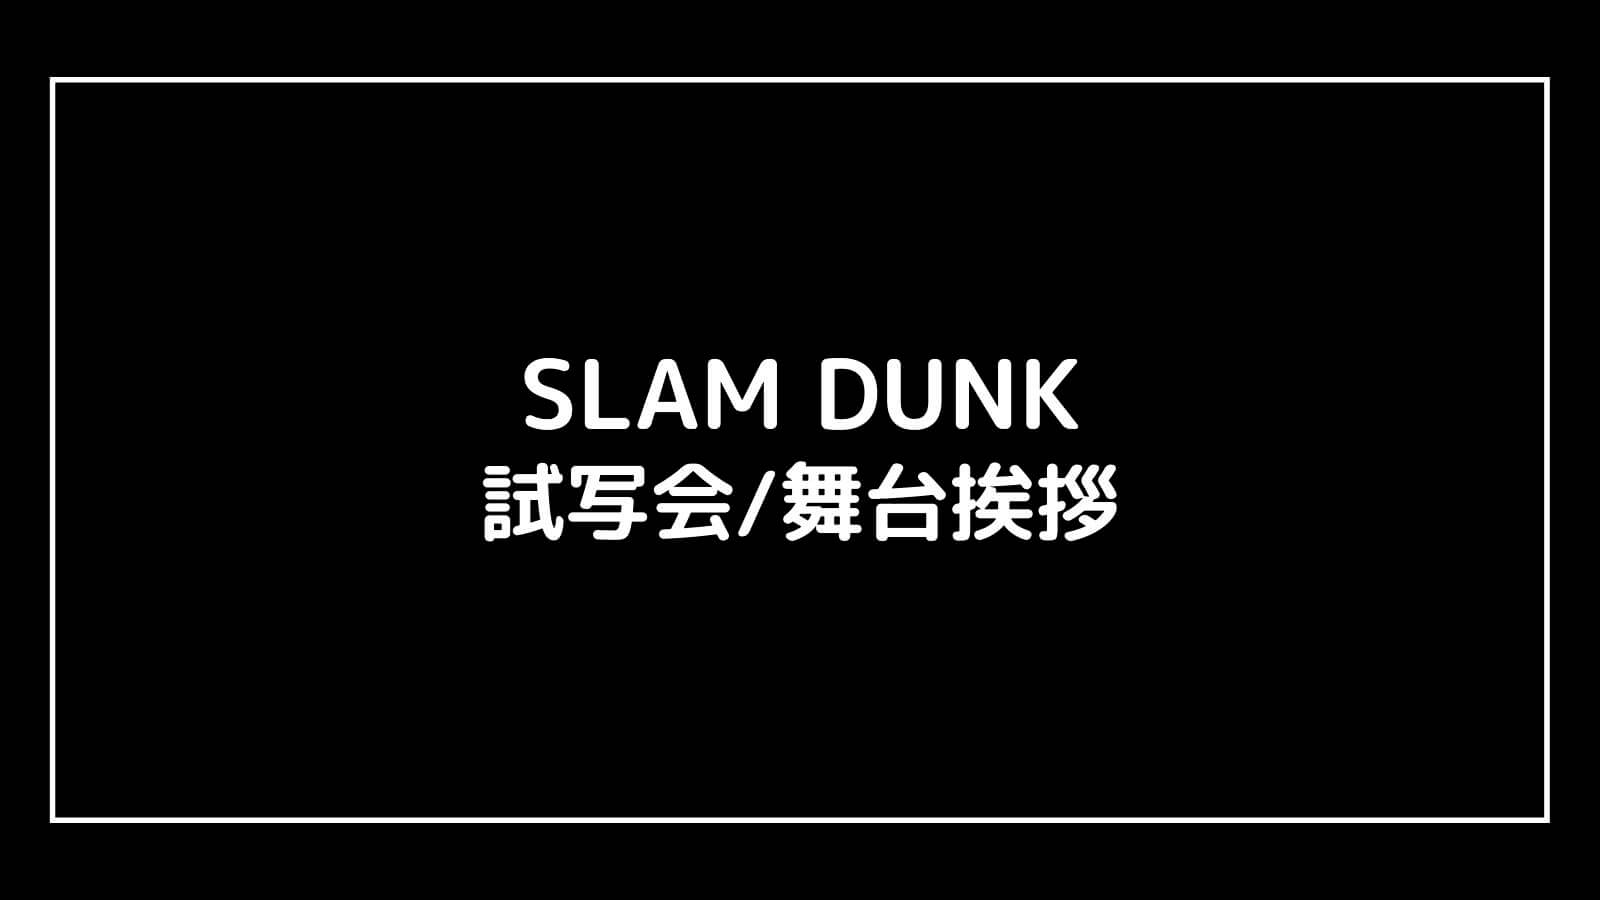 映画『SLAM DUNK』の試写会と舞台挨拶ライブビューイング情報